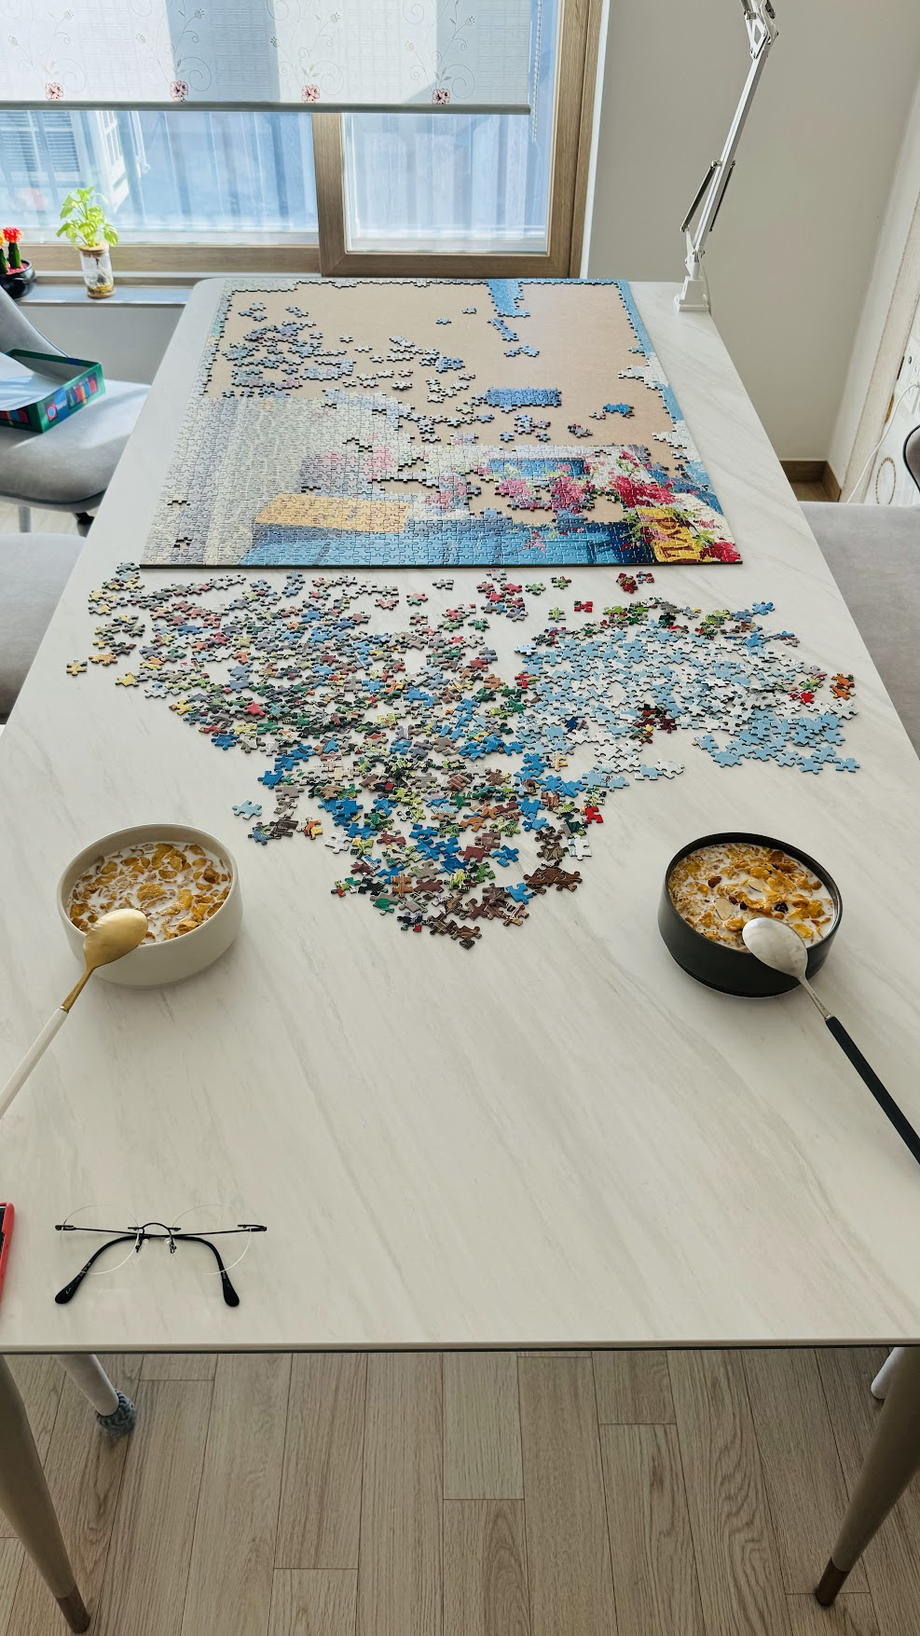 Foto van de puzzel en ontbijtgranen op de tafel